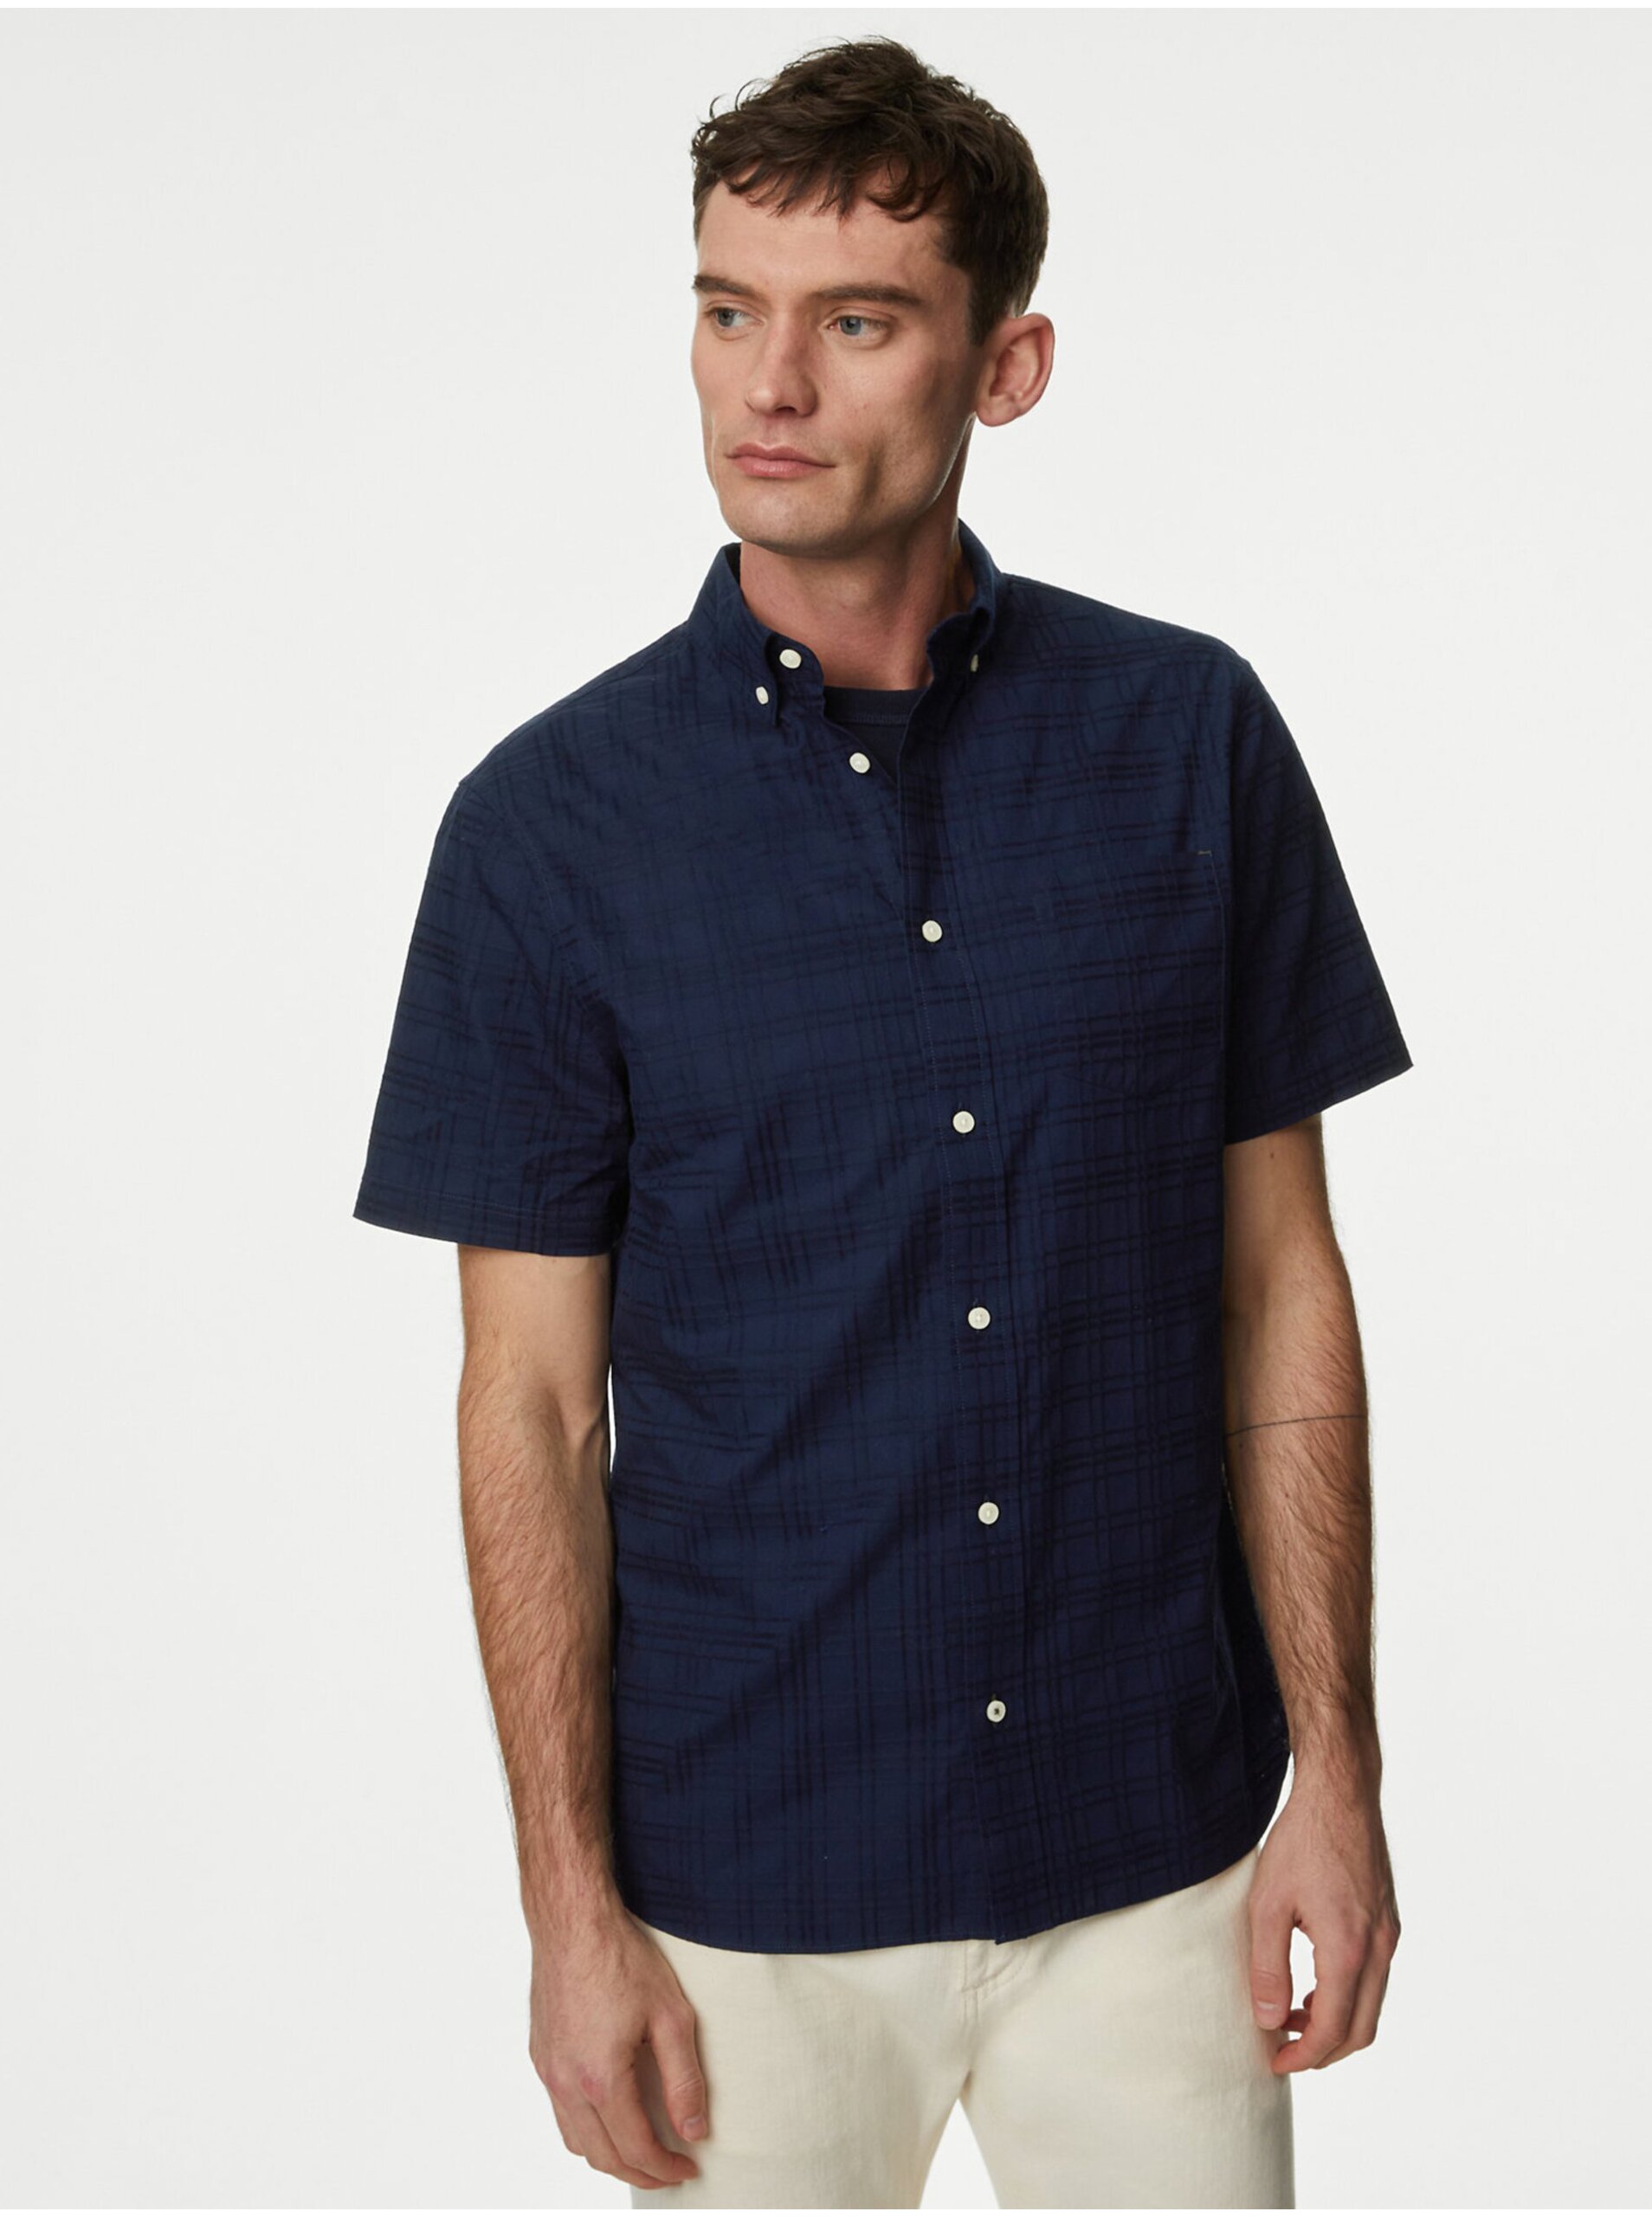 Lacno Tmavomodrá pánska košeľa s krátkym rukávom Marks & Spencer